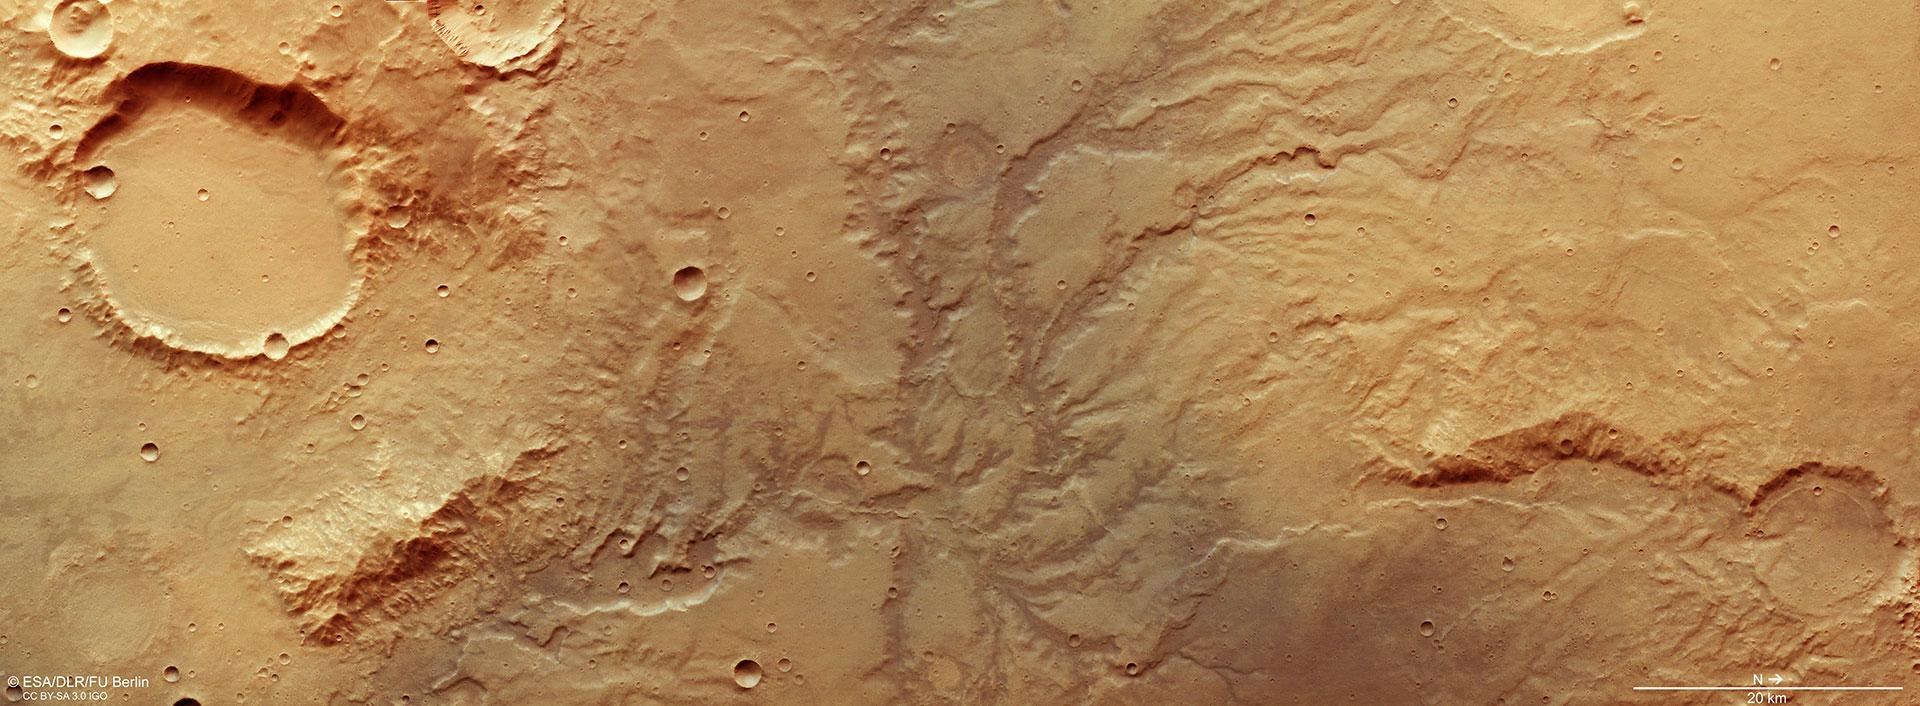 Blick auf das stark verästelte Talnetzwerk auf dem Mars